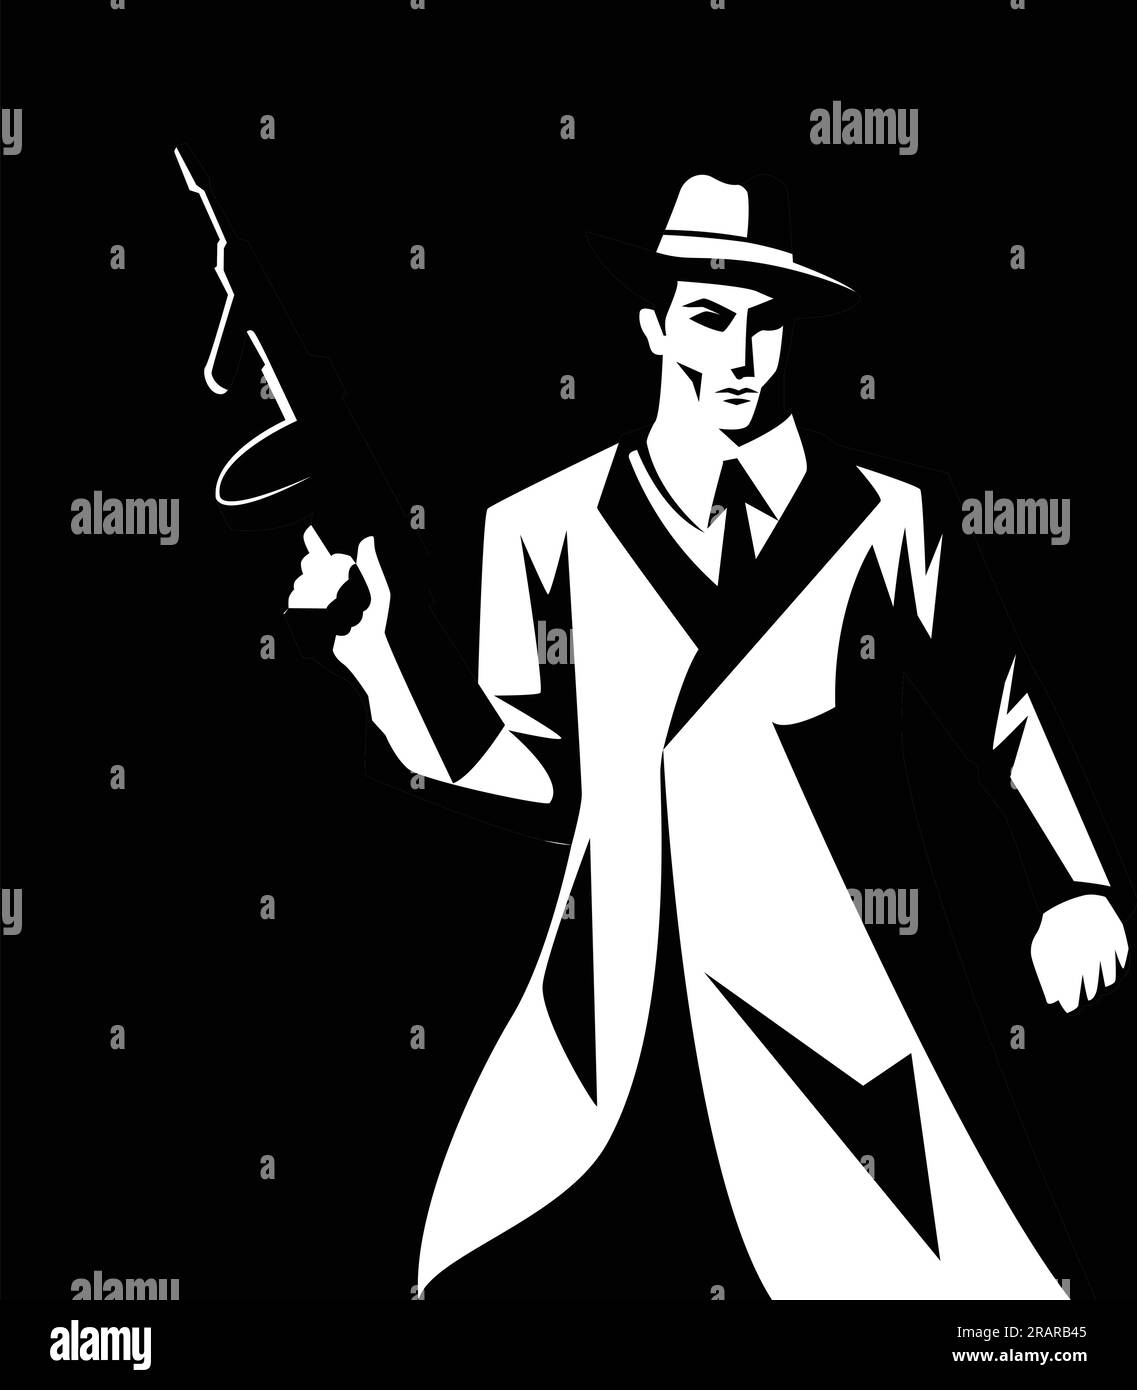 Schwarz-weiße Darstellung eines Mannes, der Maschinenpistole, Gangster, Mobster, Mafiasymbol hält Stock Vektor